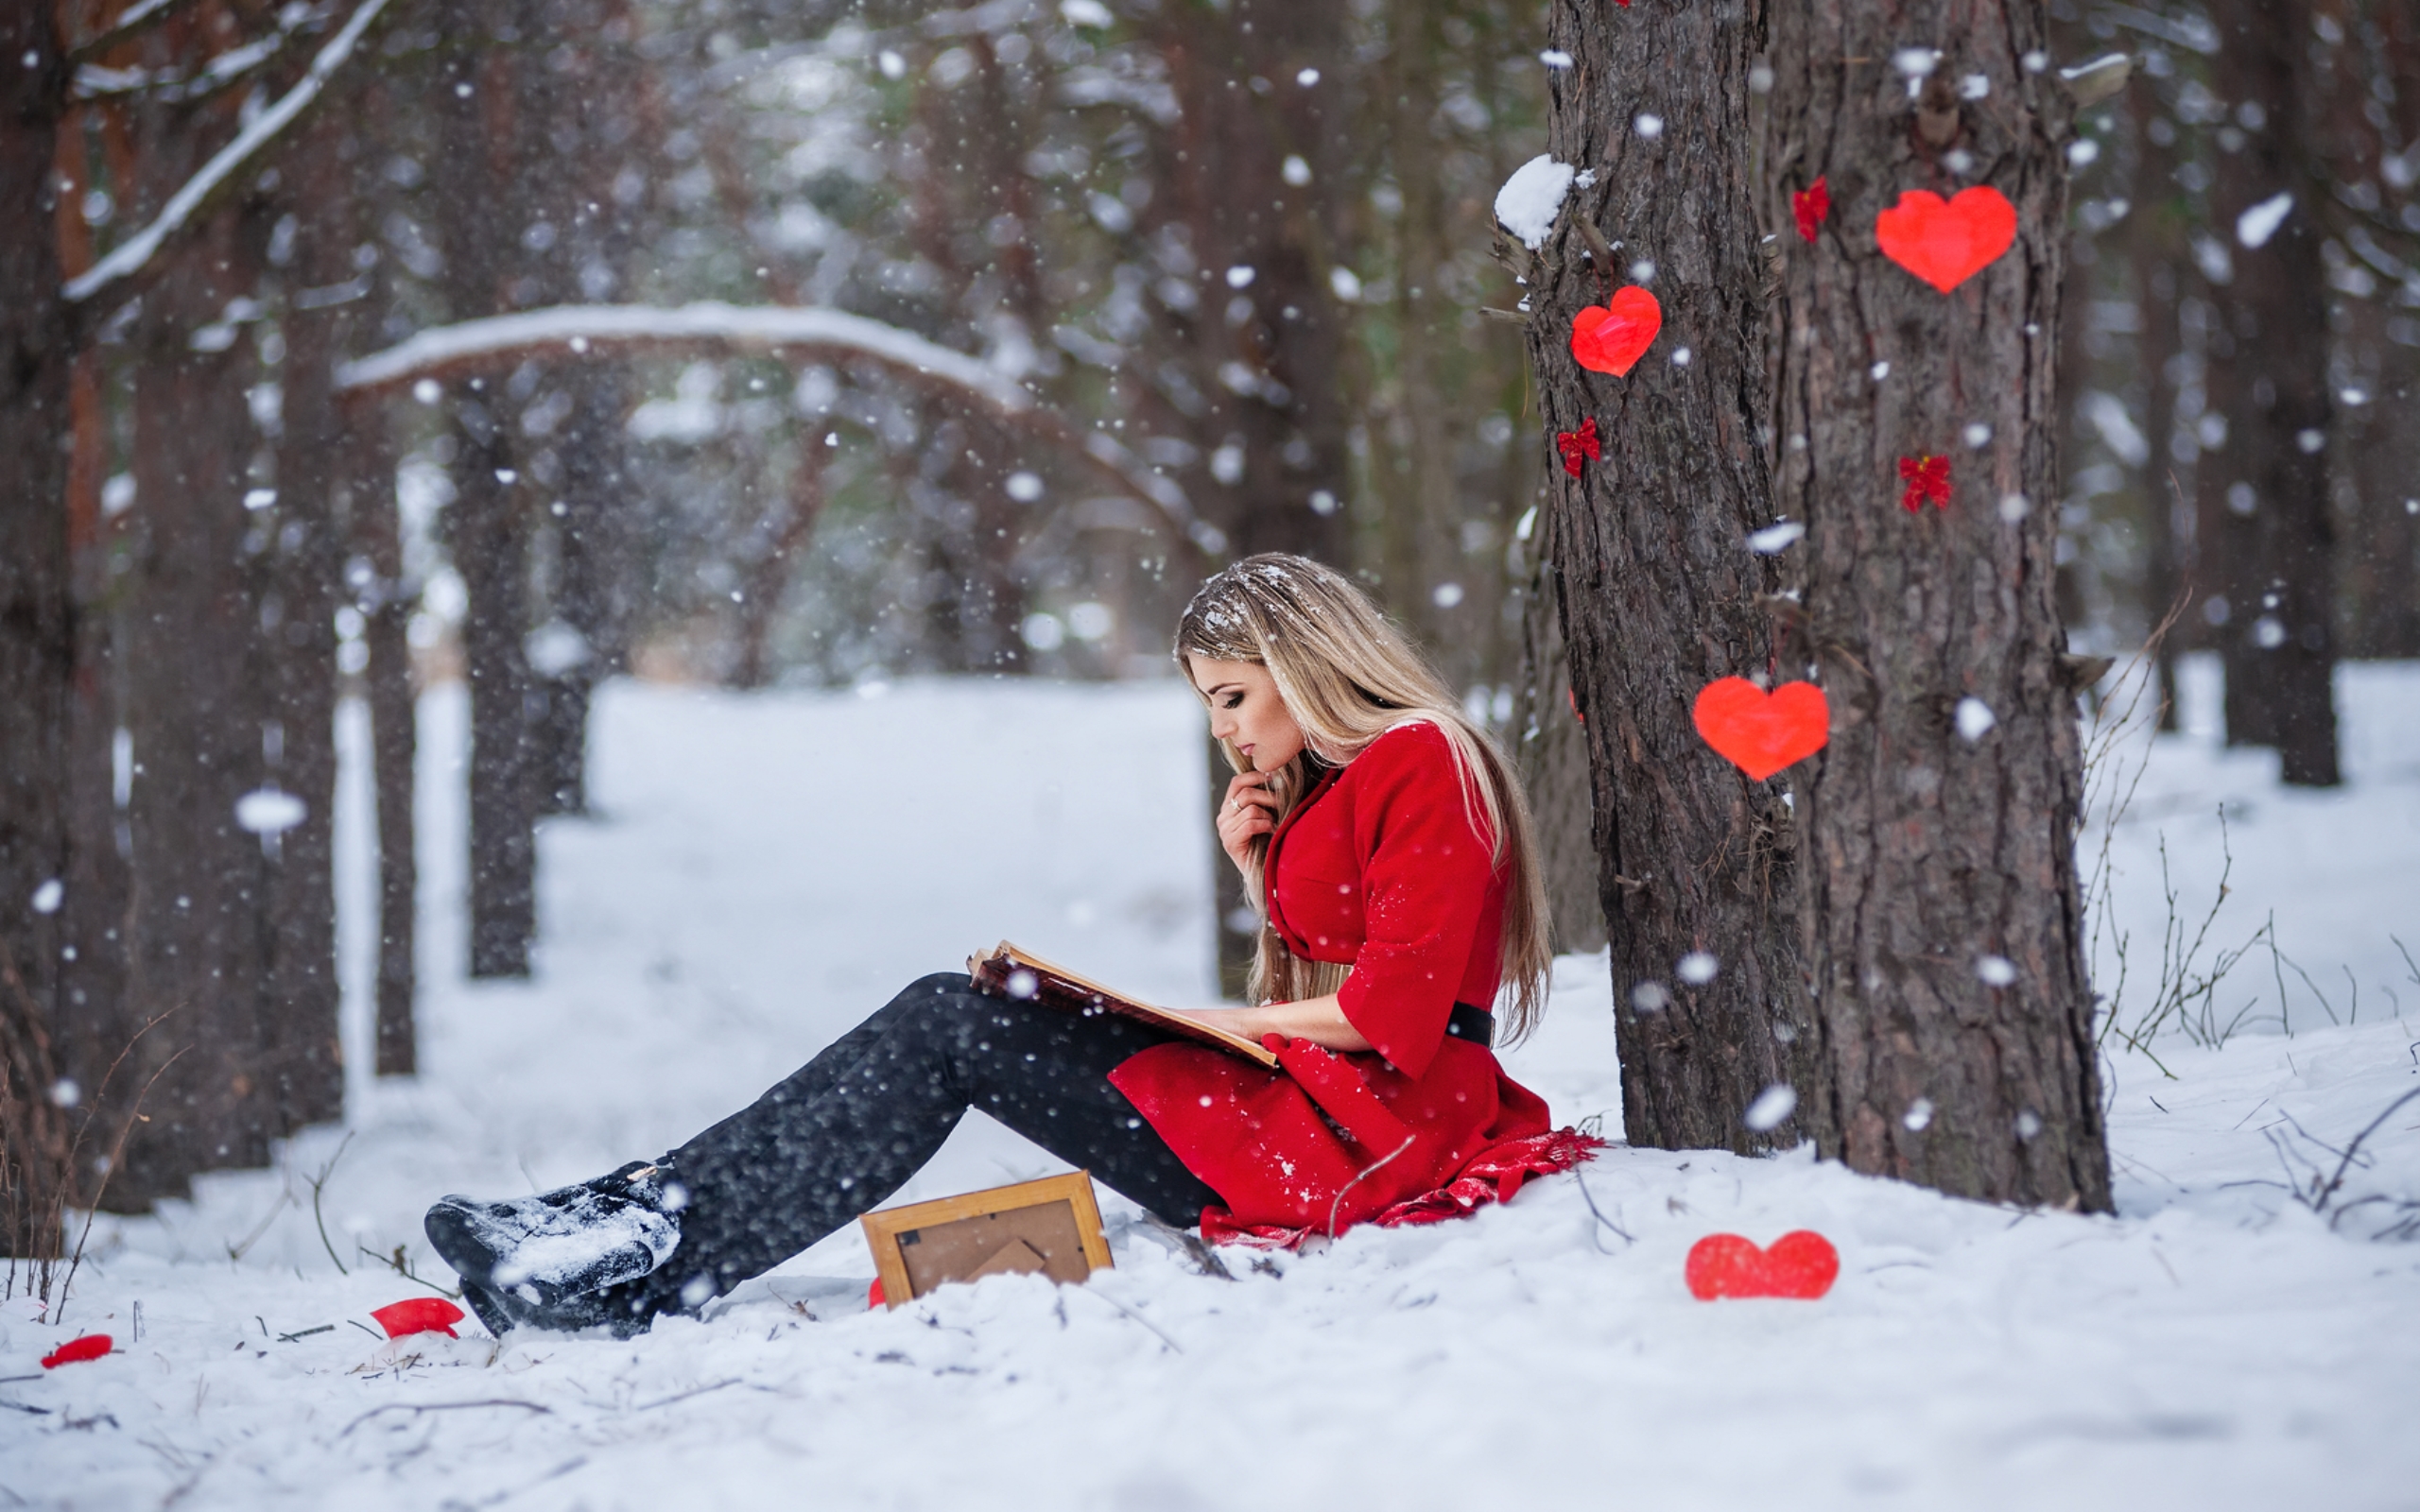 tapete liebe tapete,schnee,rot,winter,einfrieren,schönheit